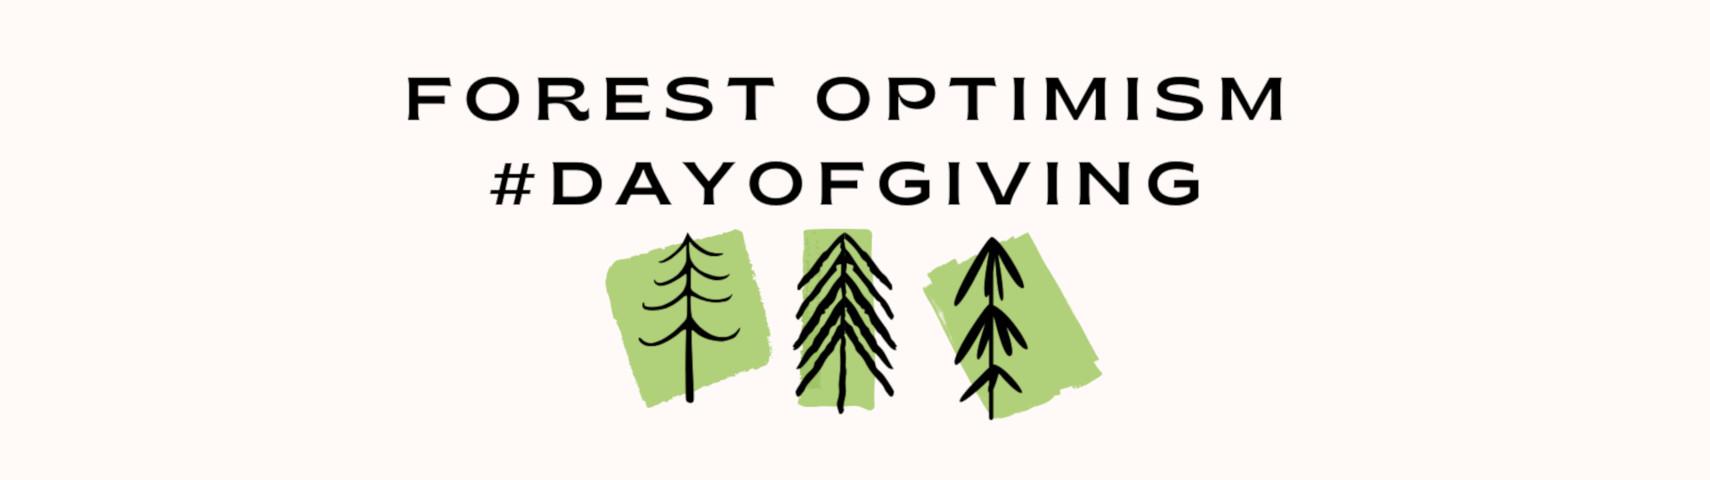 Forest Optimism banner